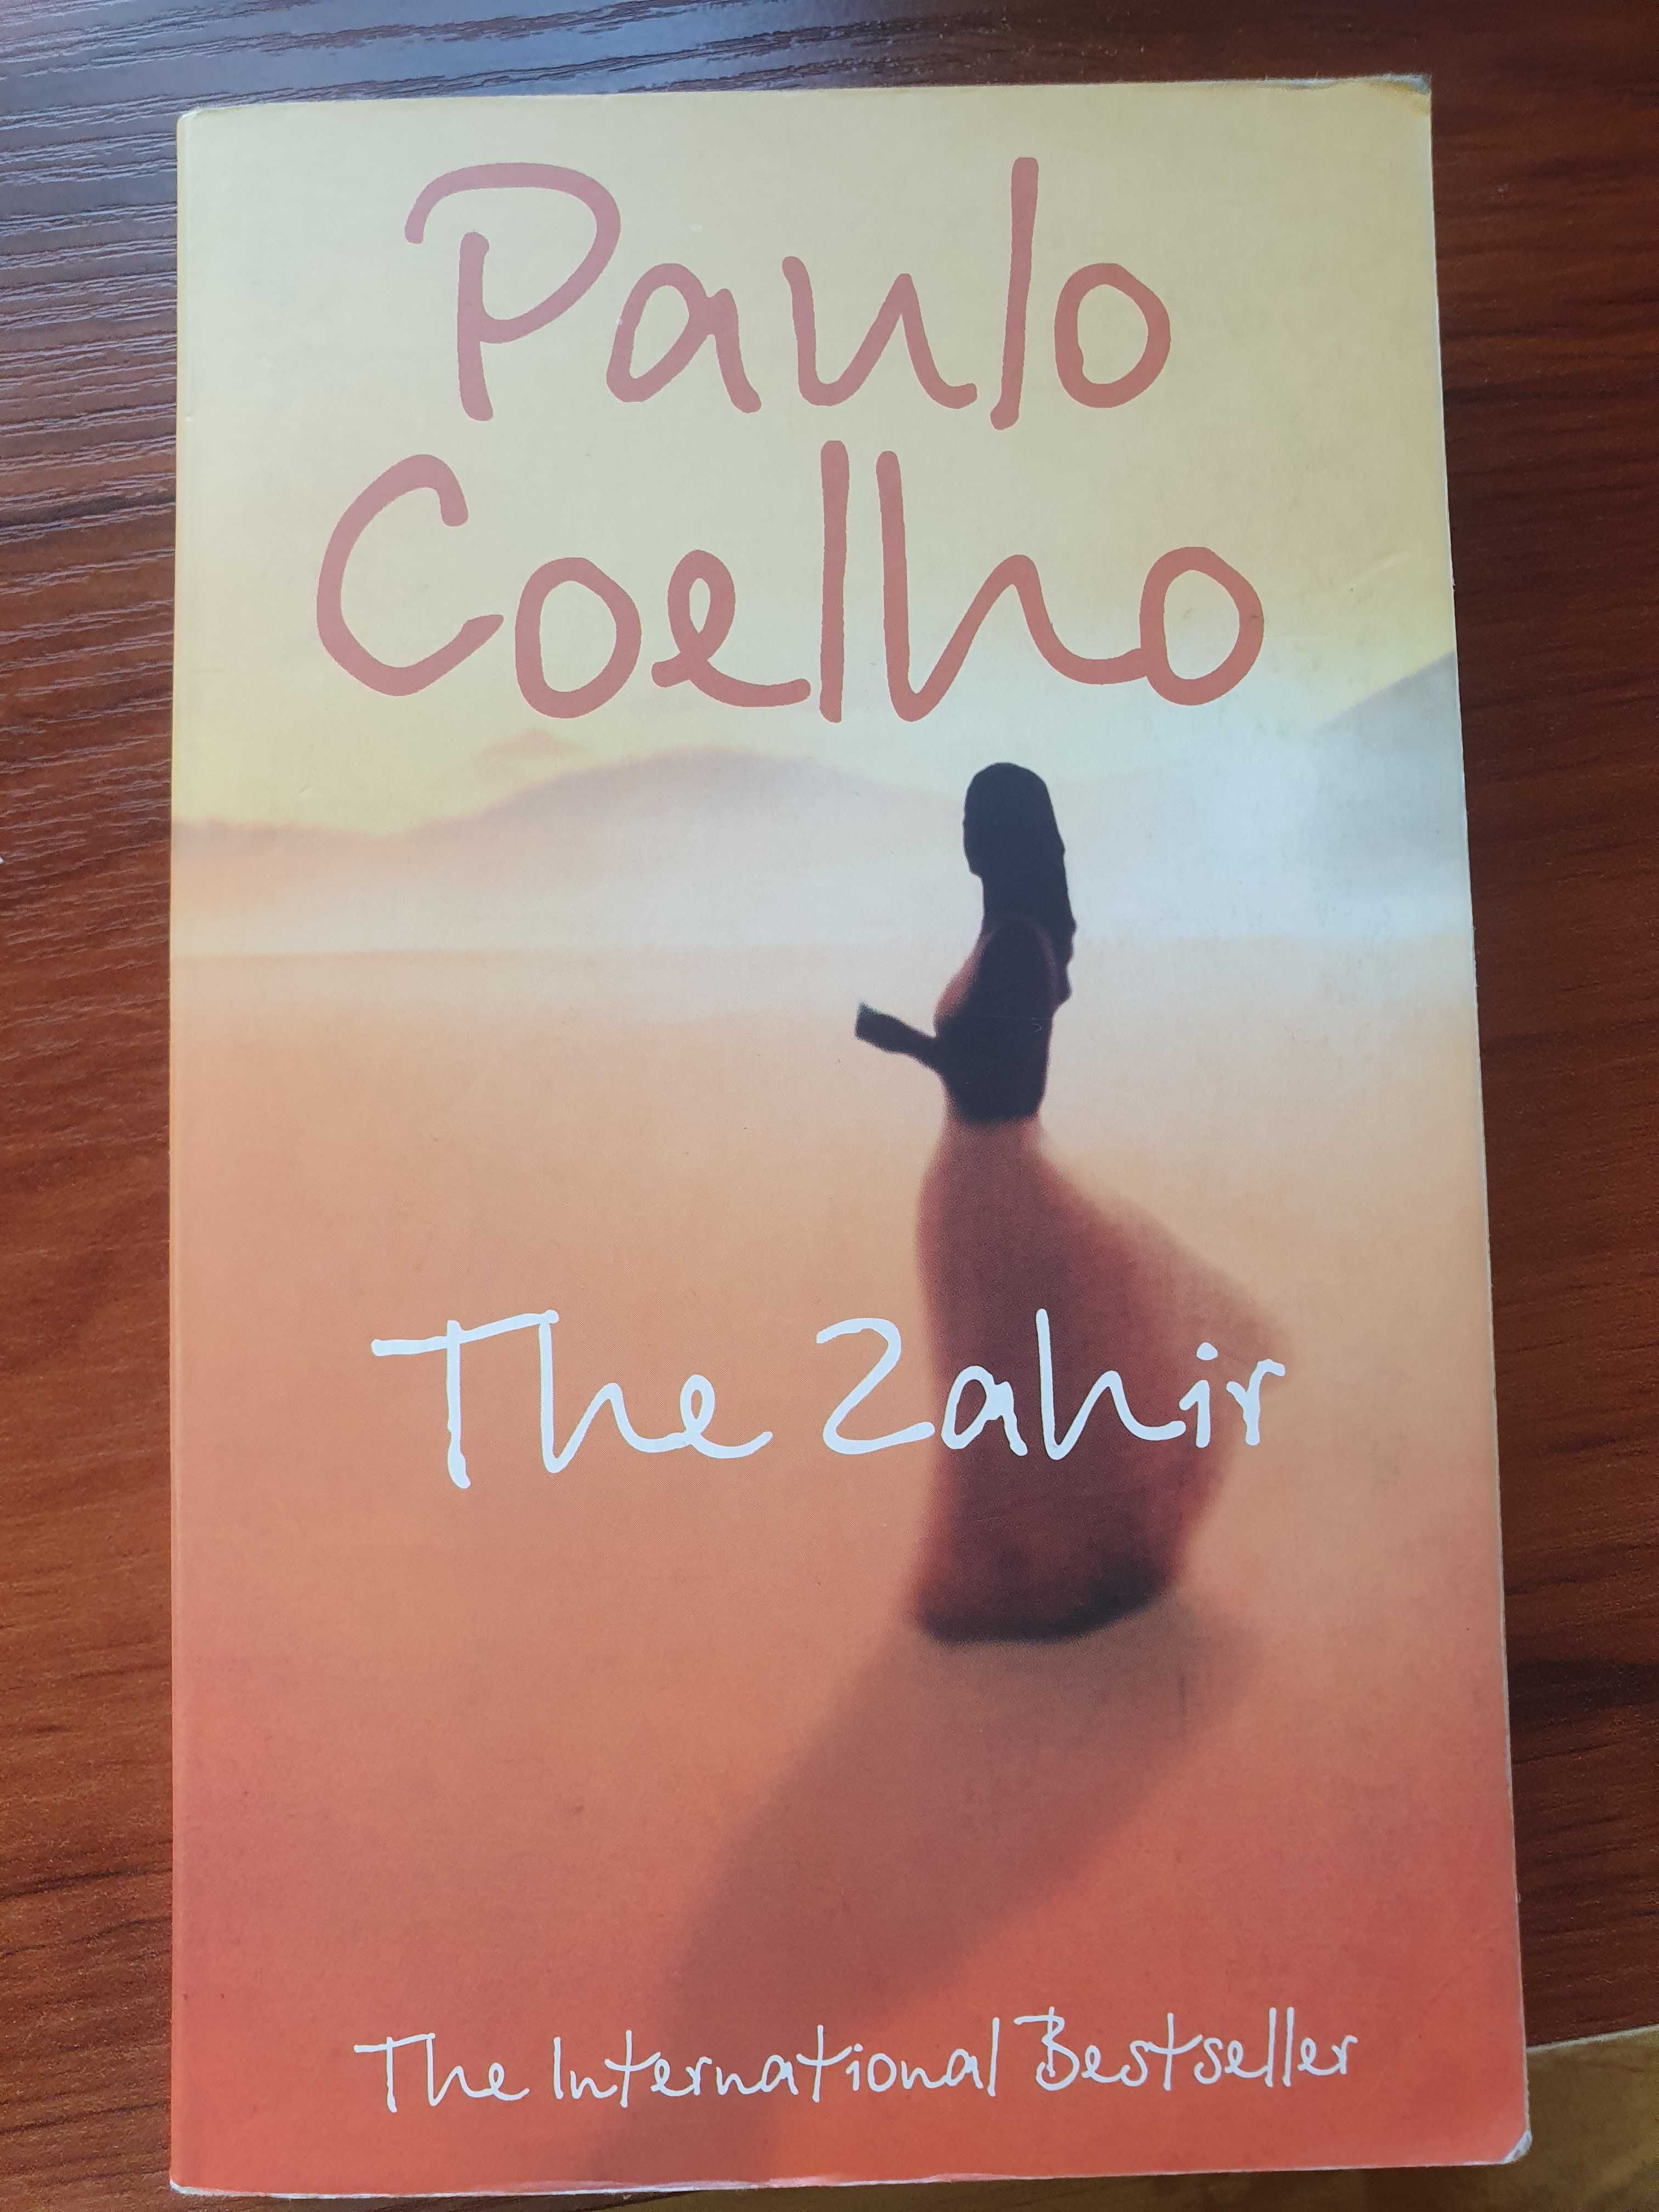 Paulo Coelho "The Zahir"